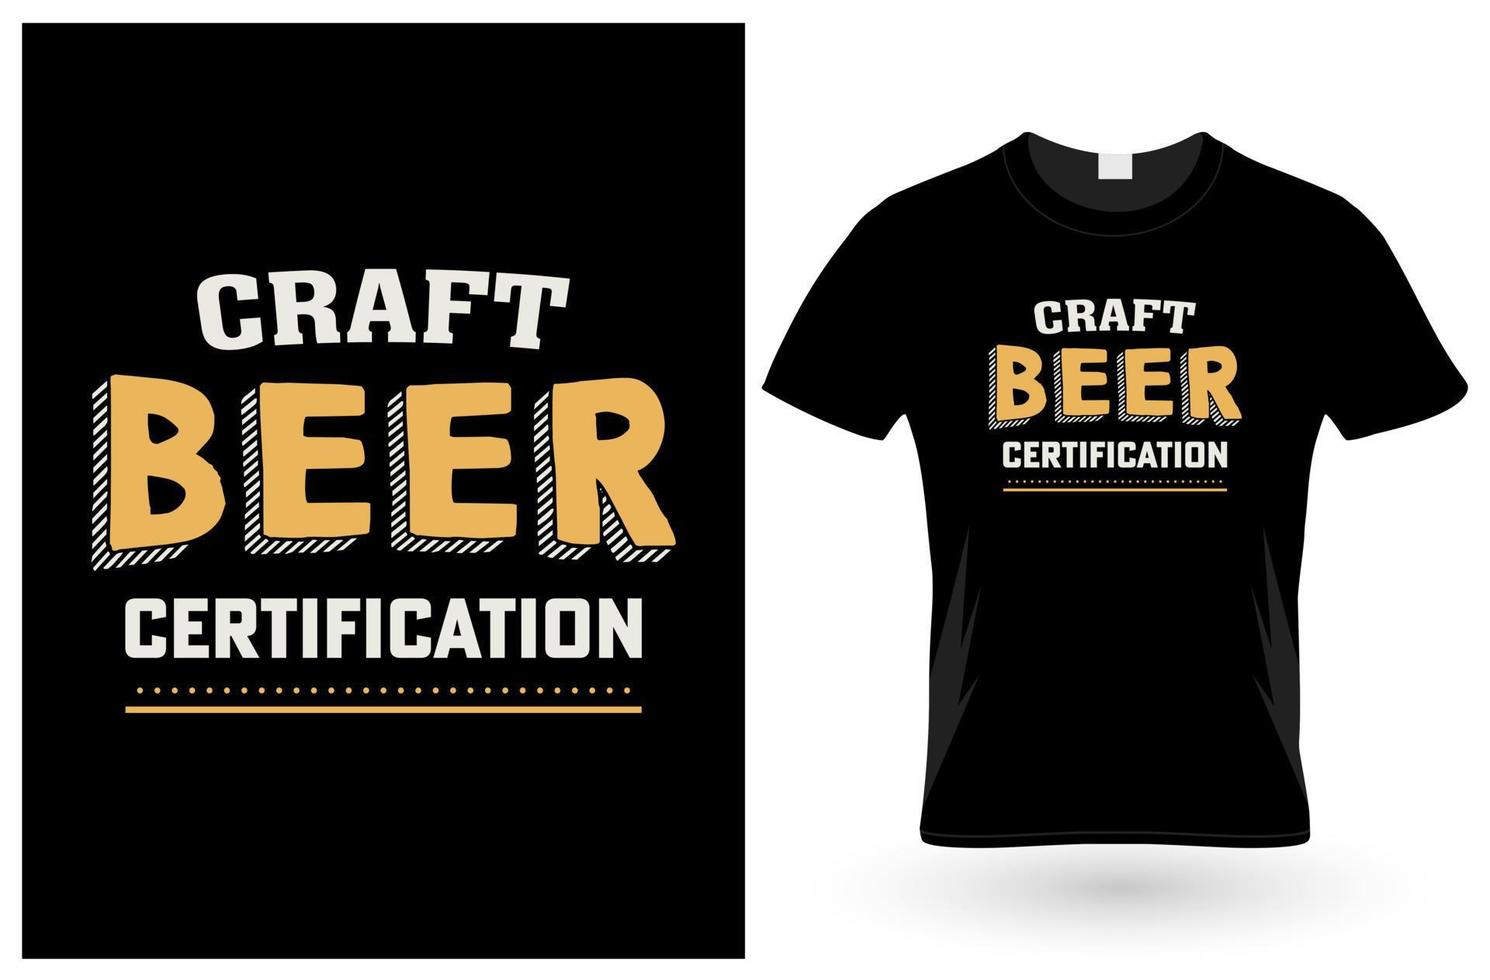 Craft Beer Certification T-Shirt Design vector